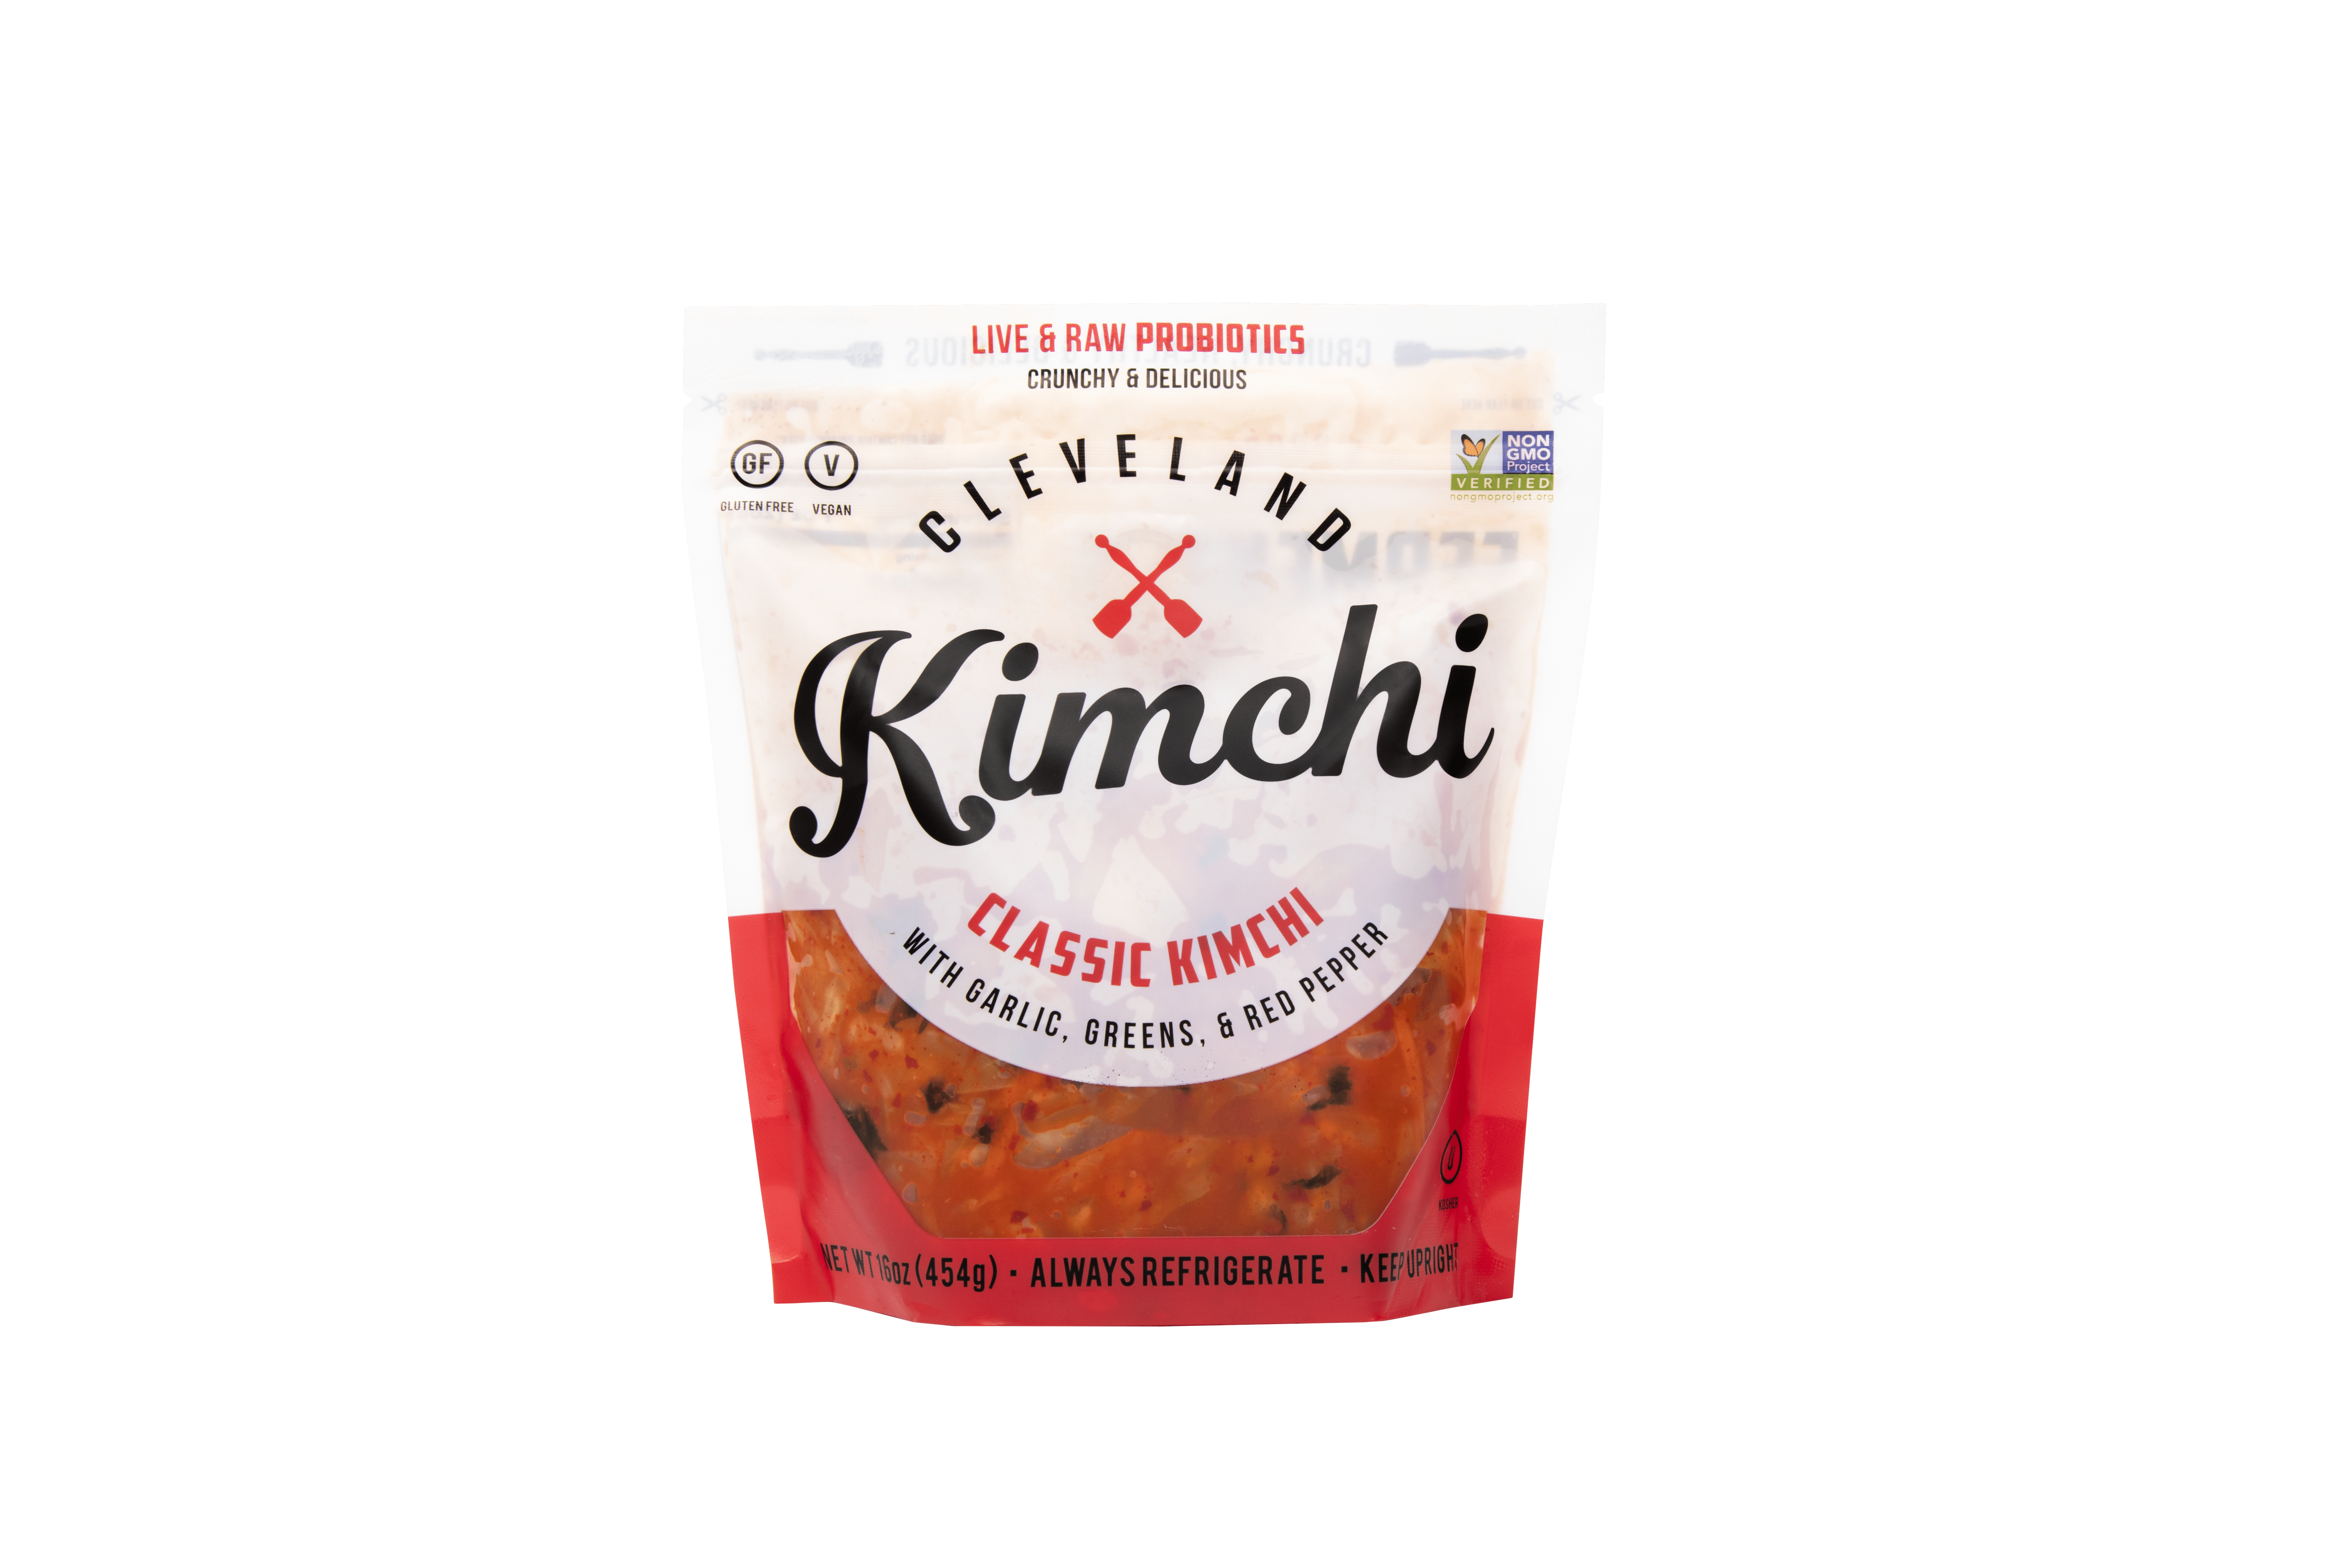 Cleveland Kitchen Classic Kimchi 6 units per case 16.0 oz